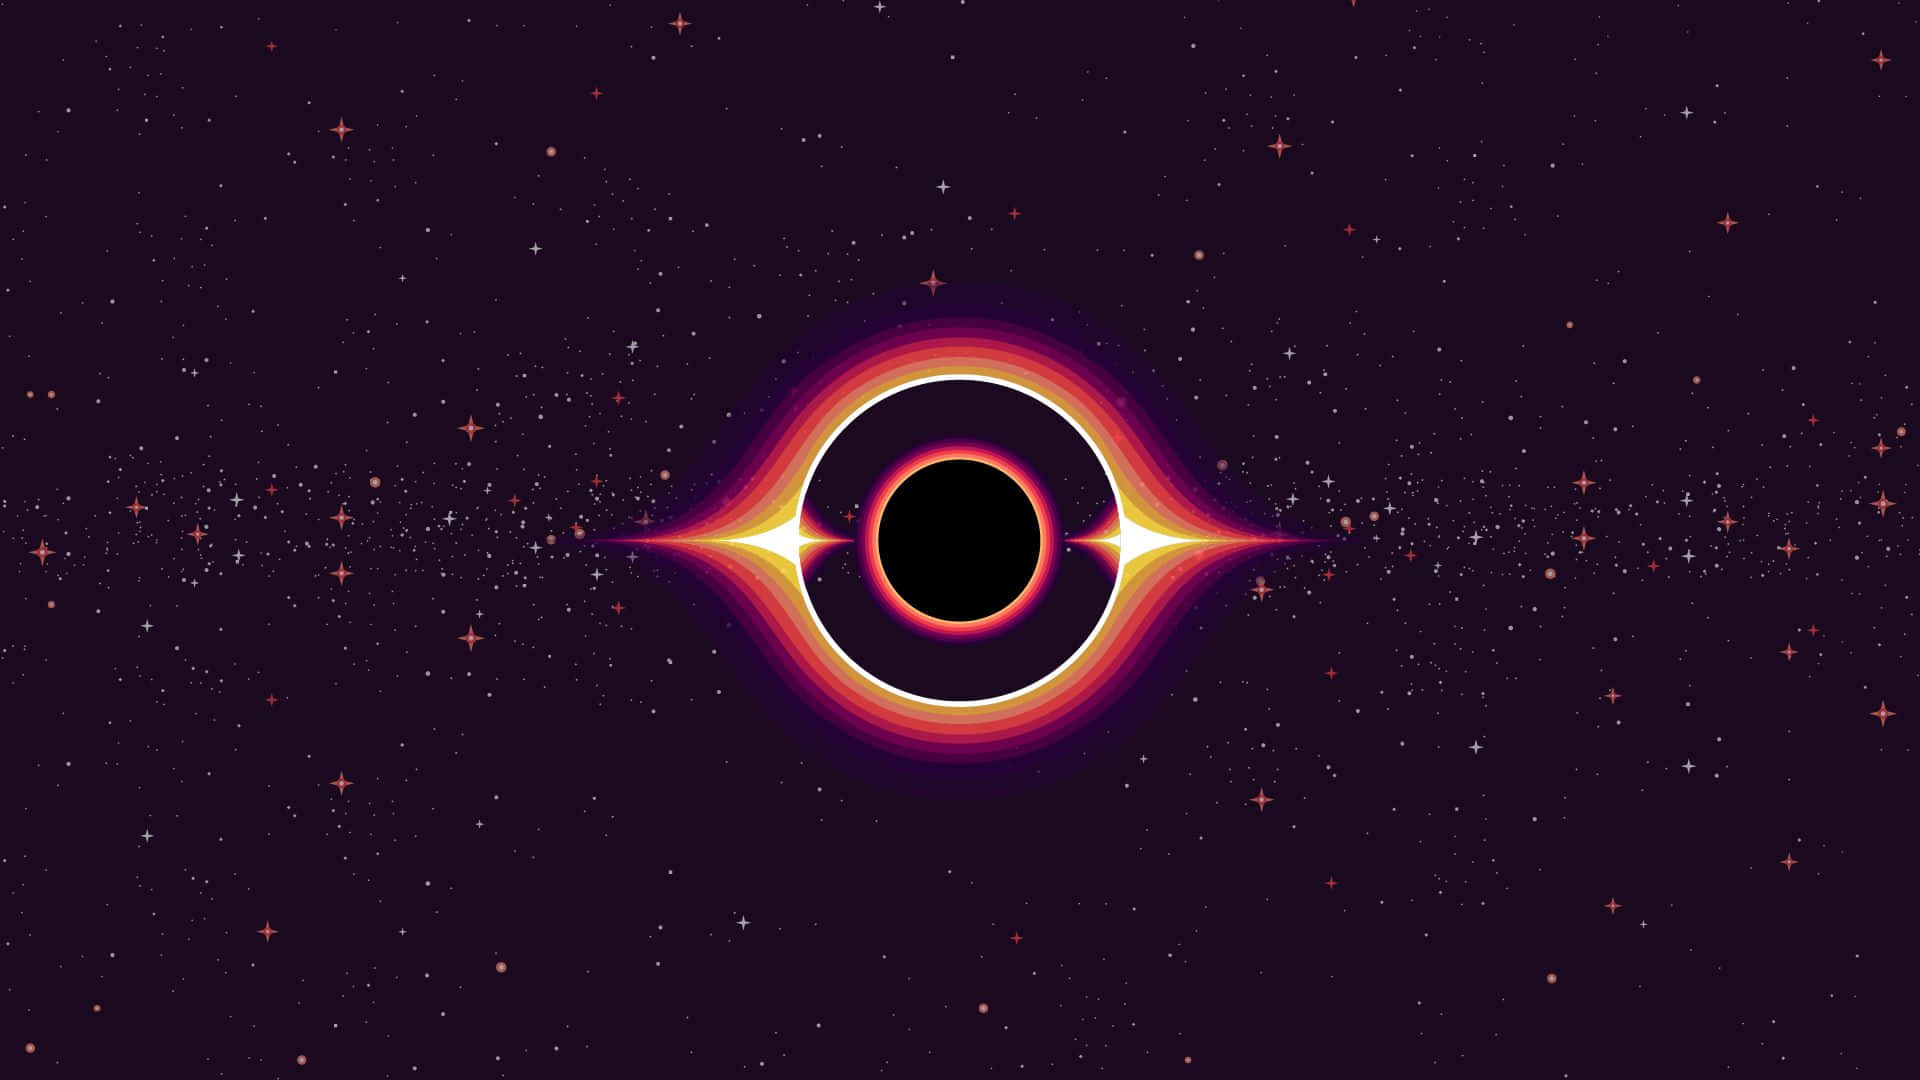 Retro Futuristic Black Hole Illustration Wallpaper